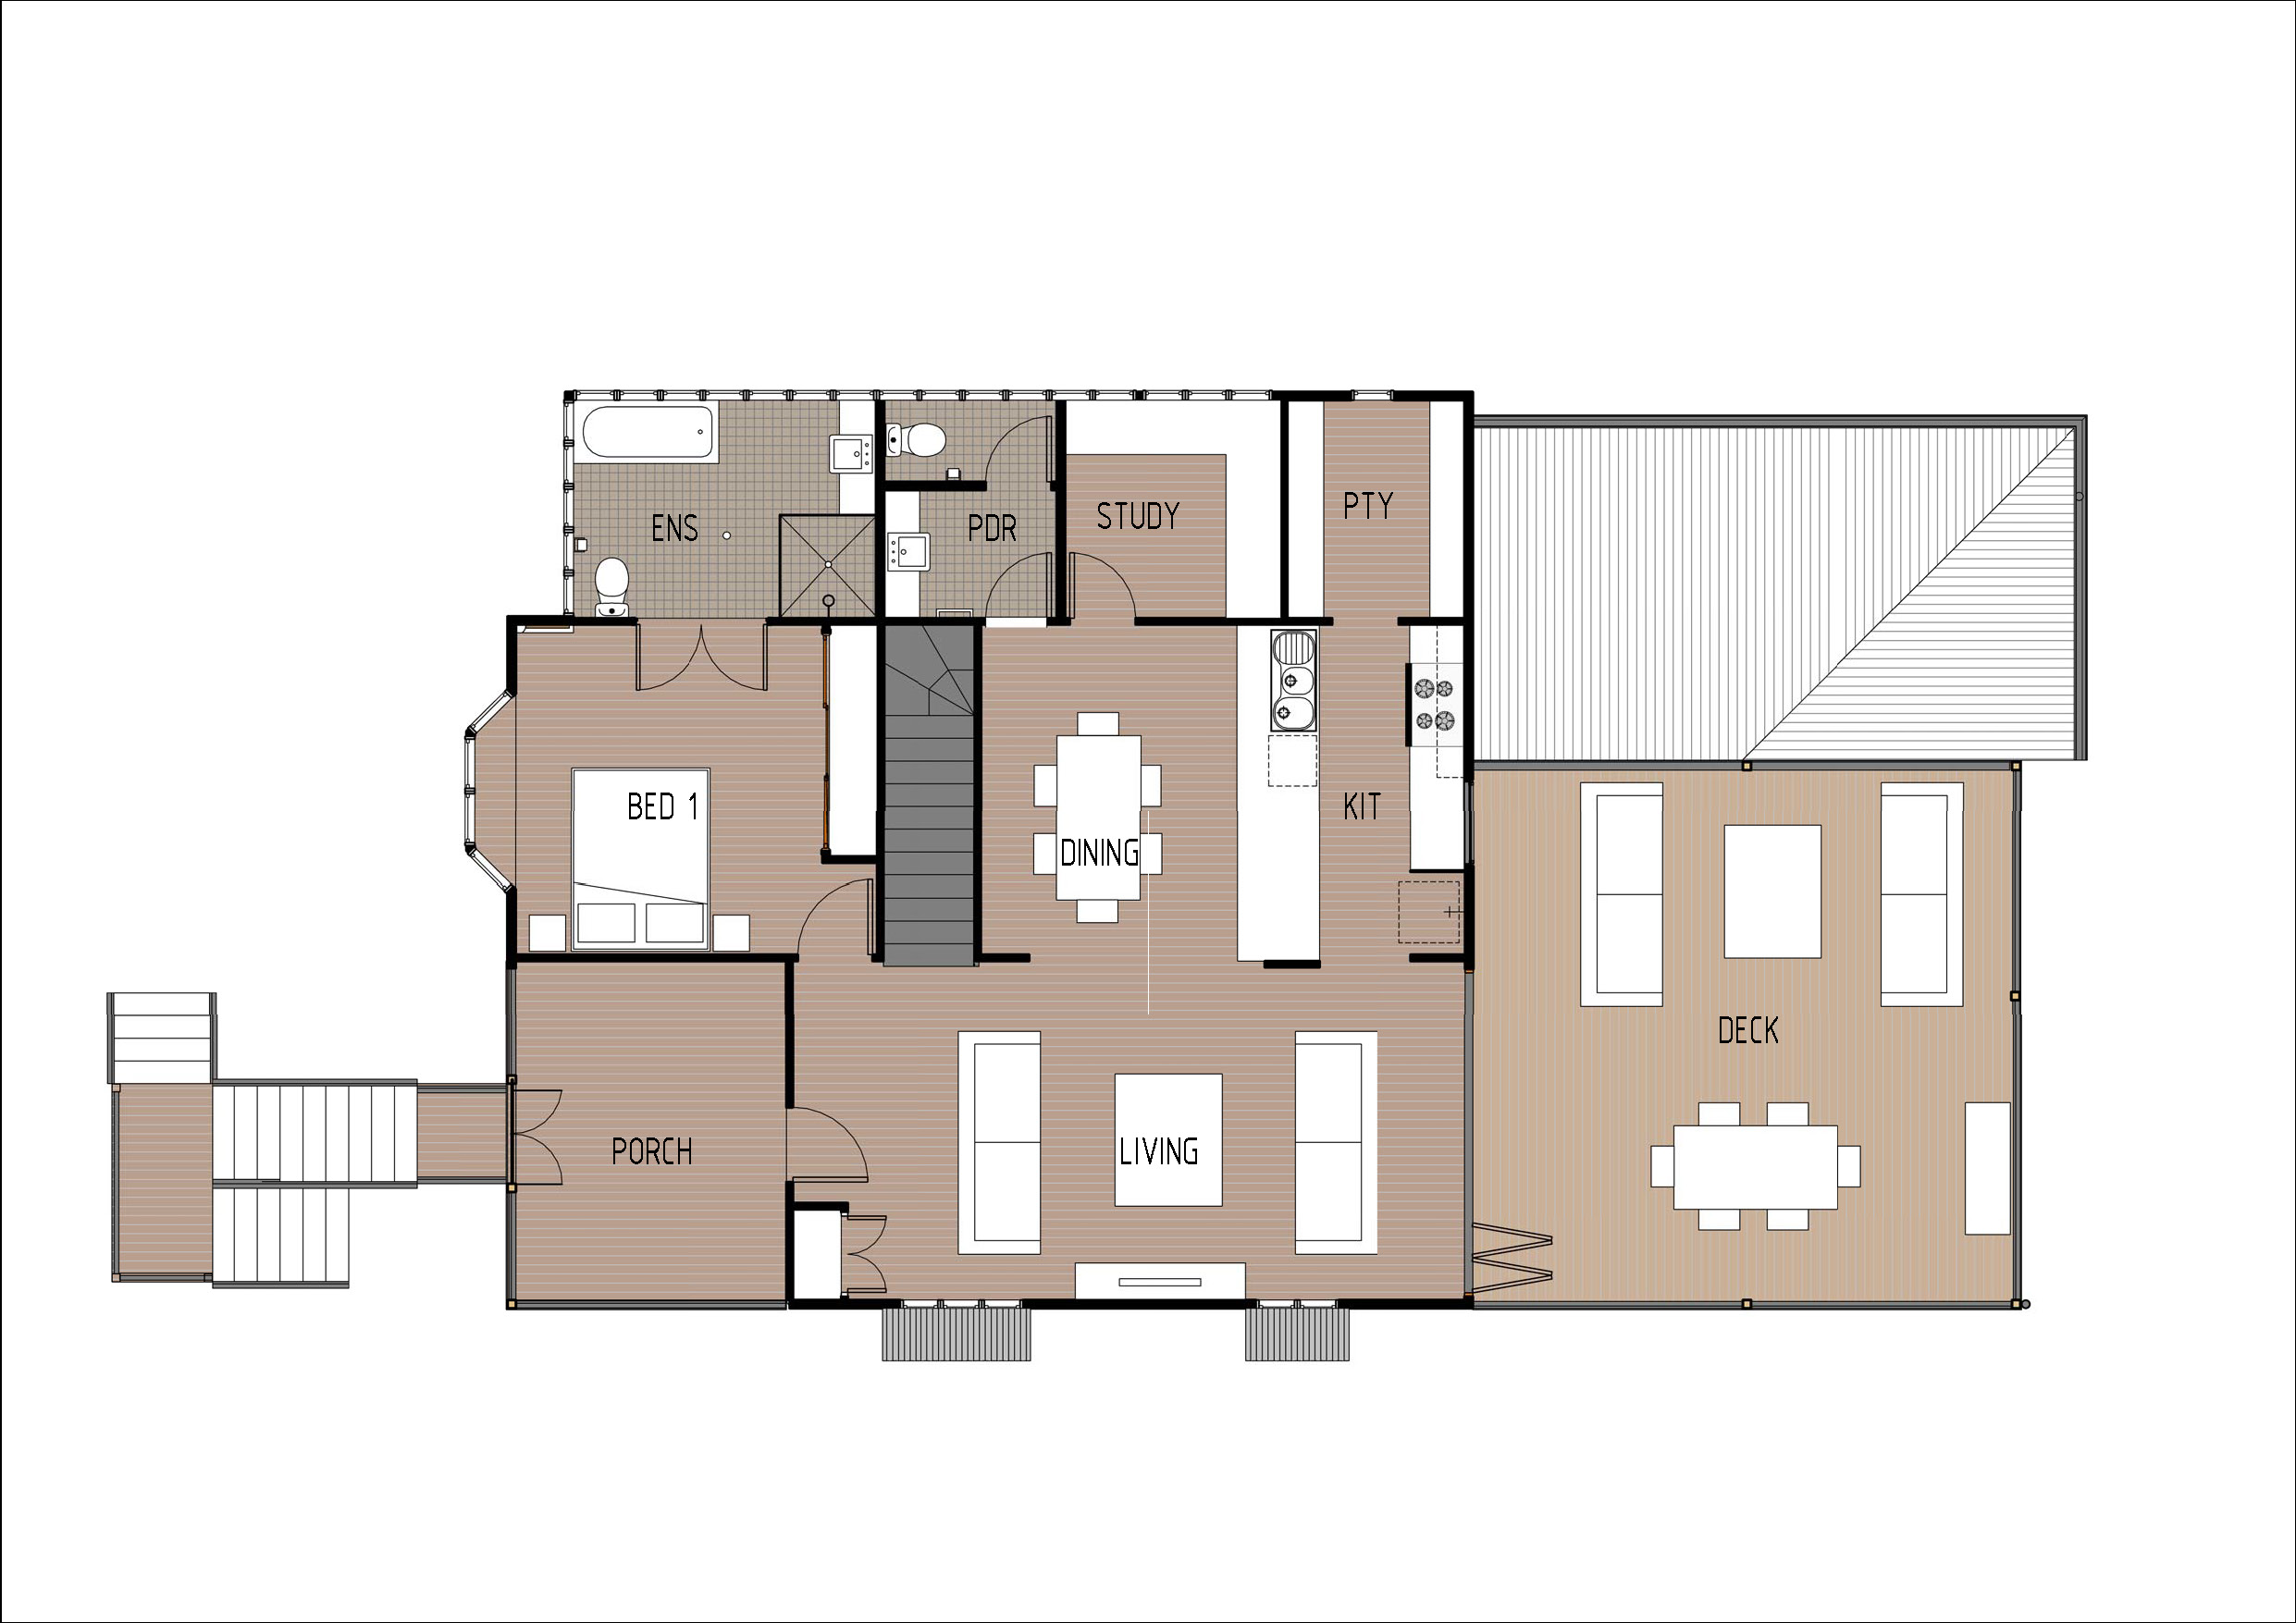 T4018 - Sheet - A803 - first floor plan - colour.jpg